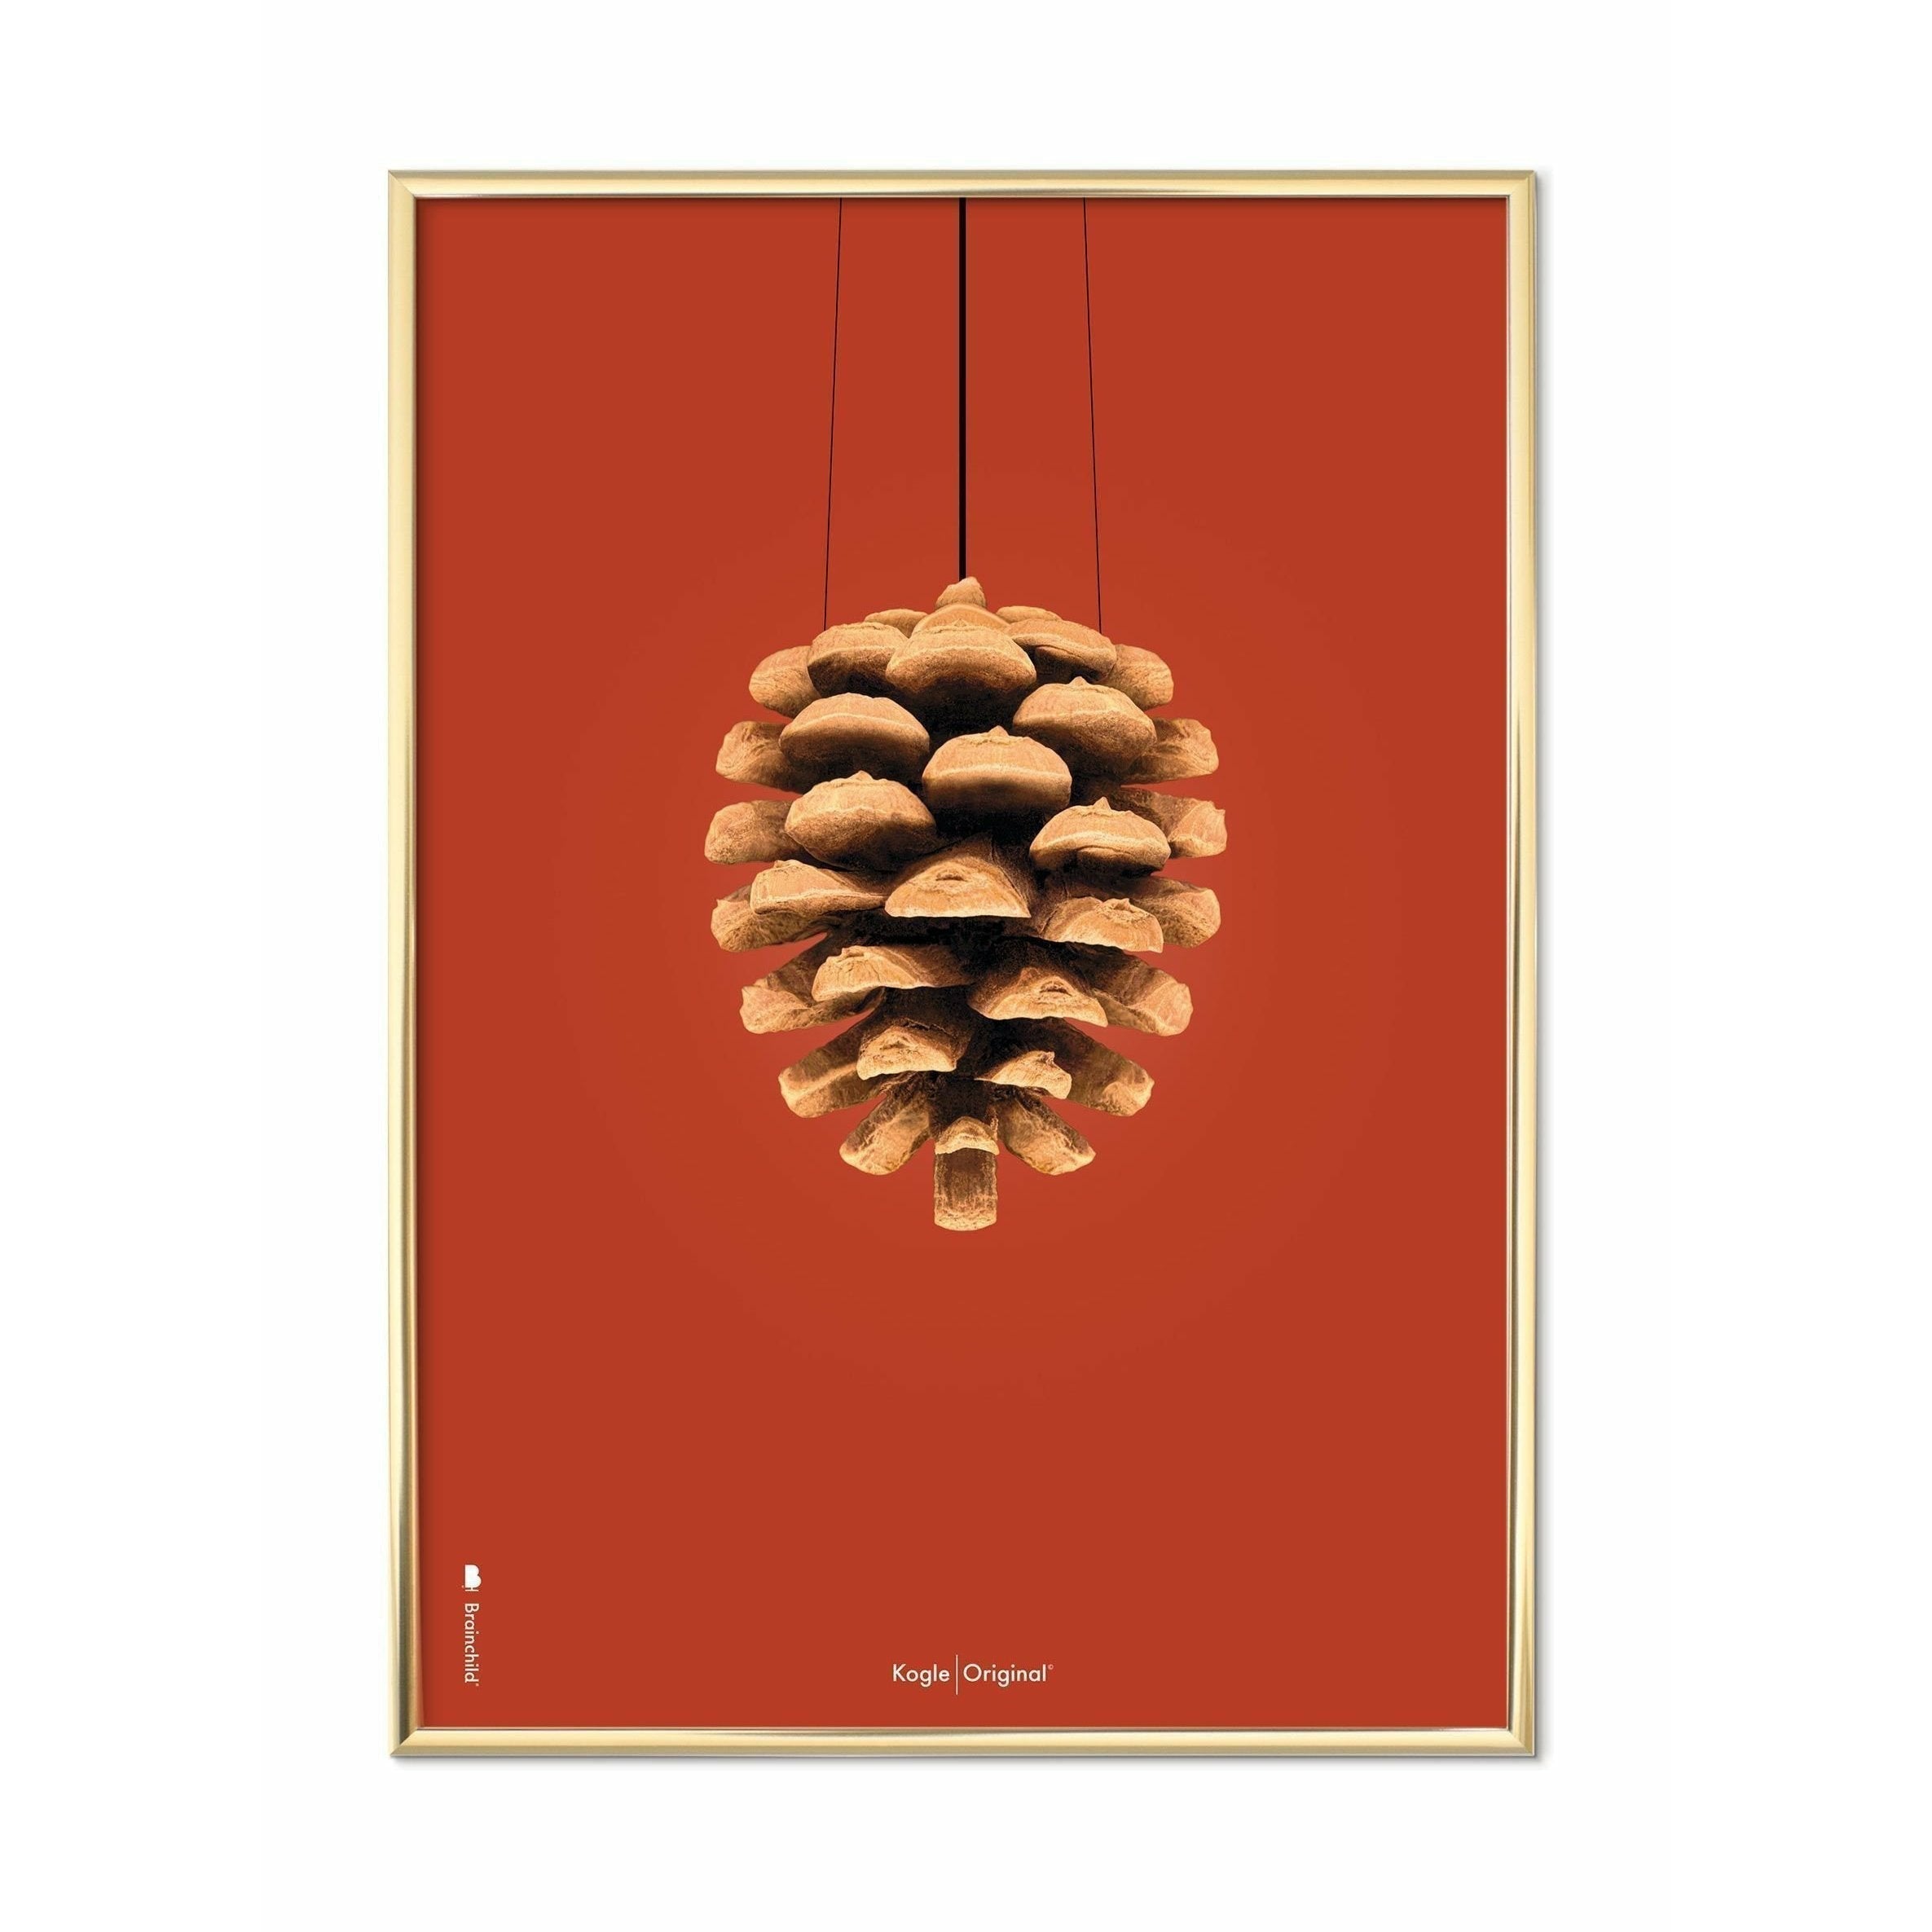 Pomysły Pine Sone Classic Plakat, mosiężna rama 70 x 100 cm, czerwone tło